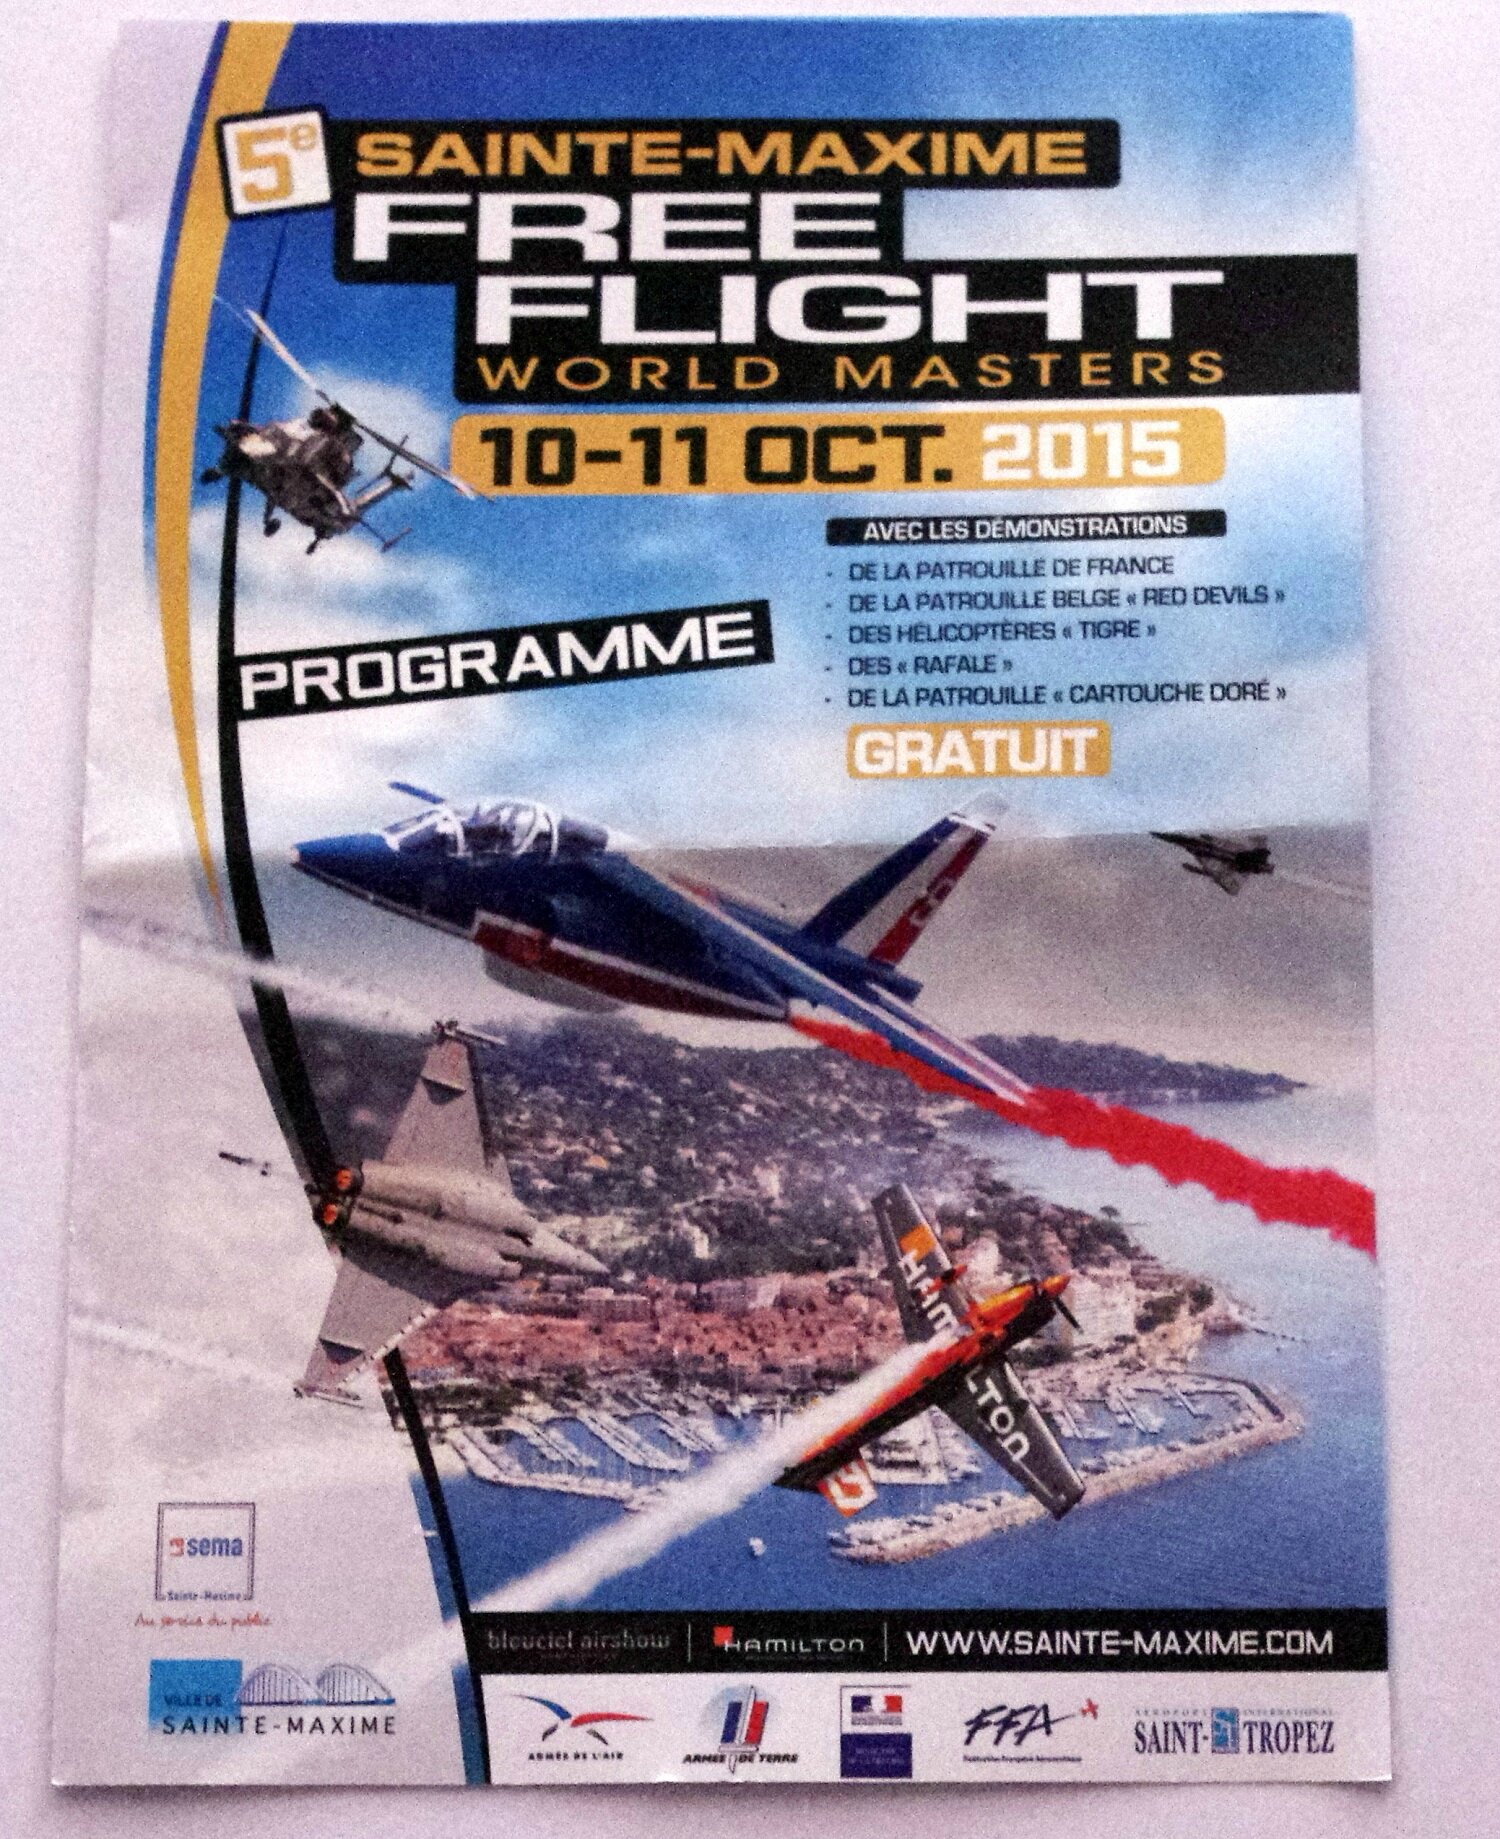 programme free flight saint maxime 2015